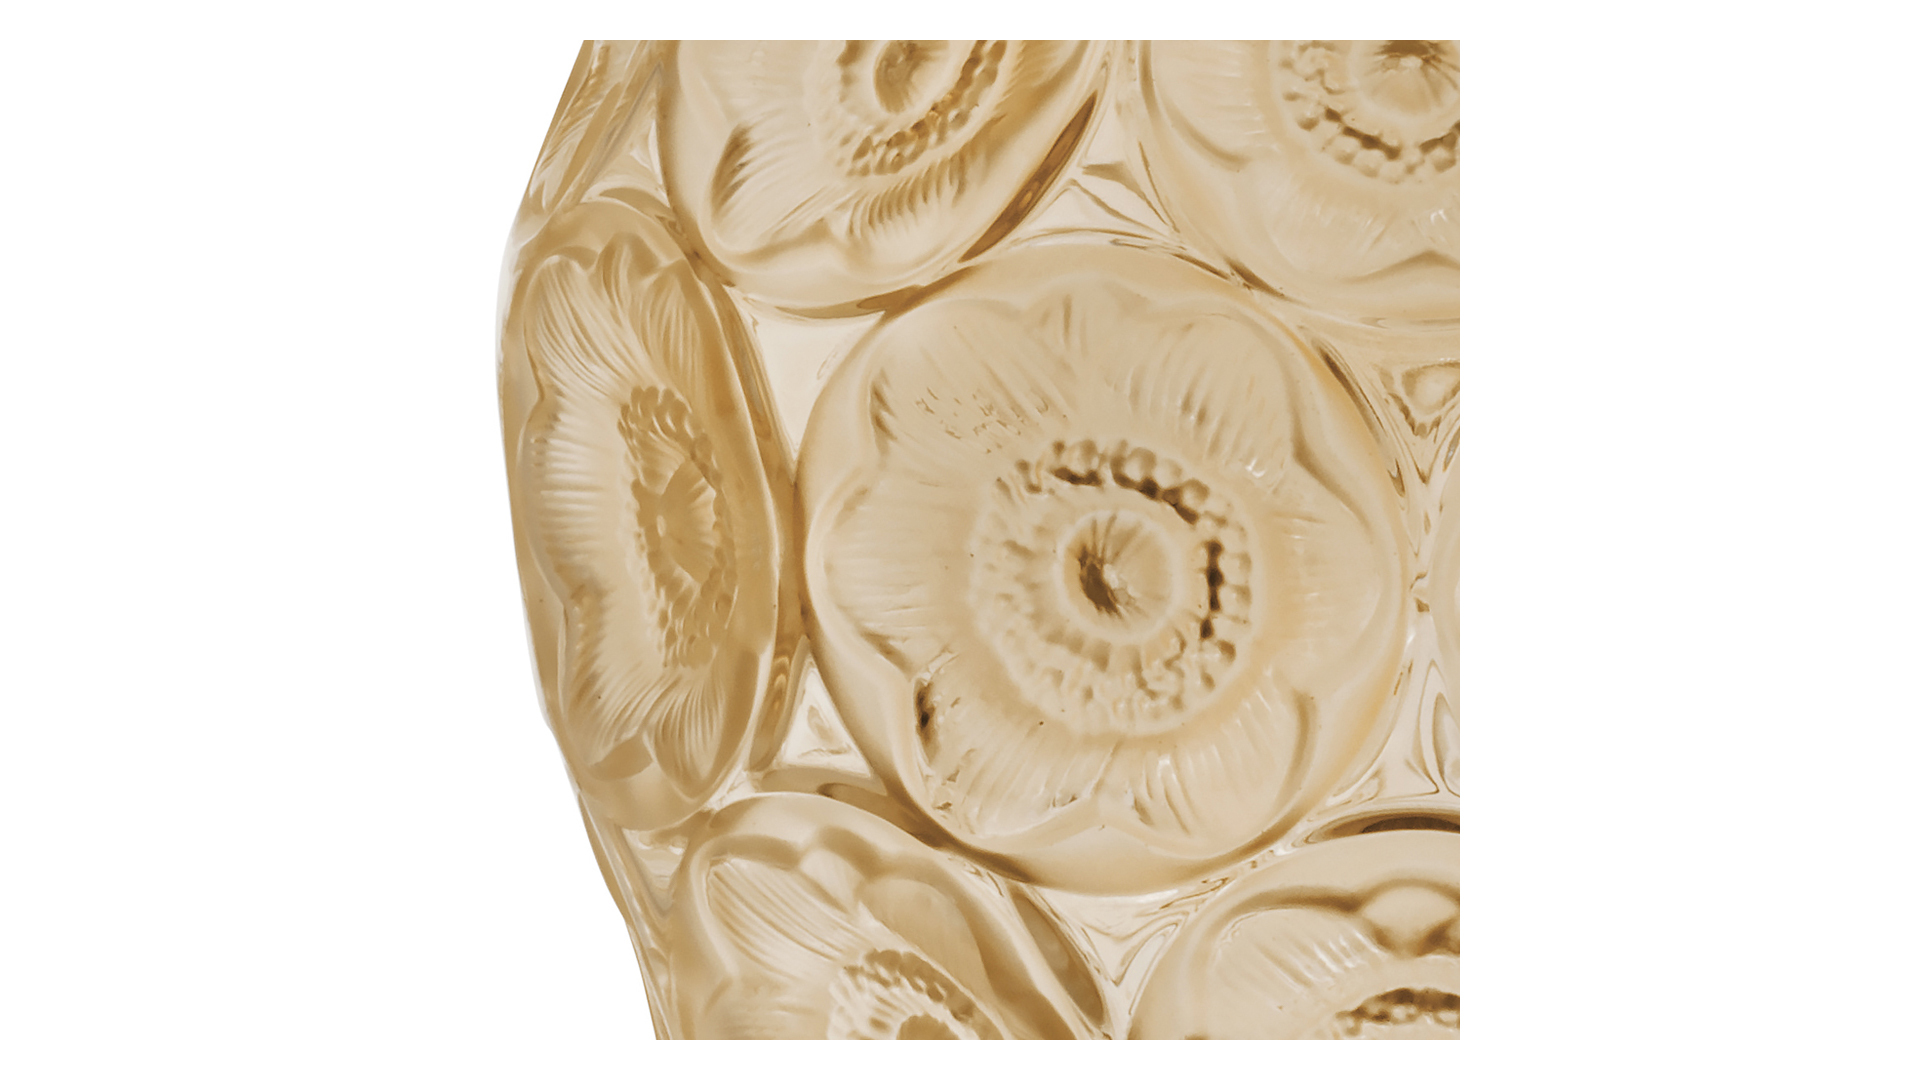 Ваза Lalique Anemones, хрусталь, золотой